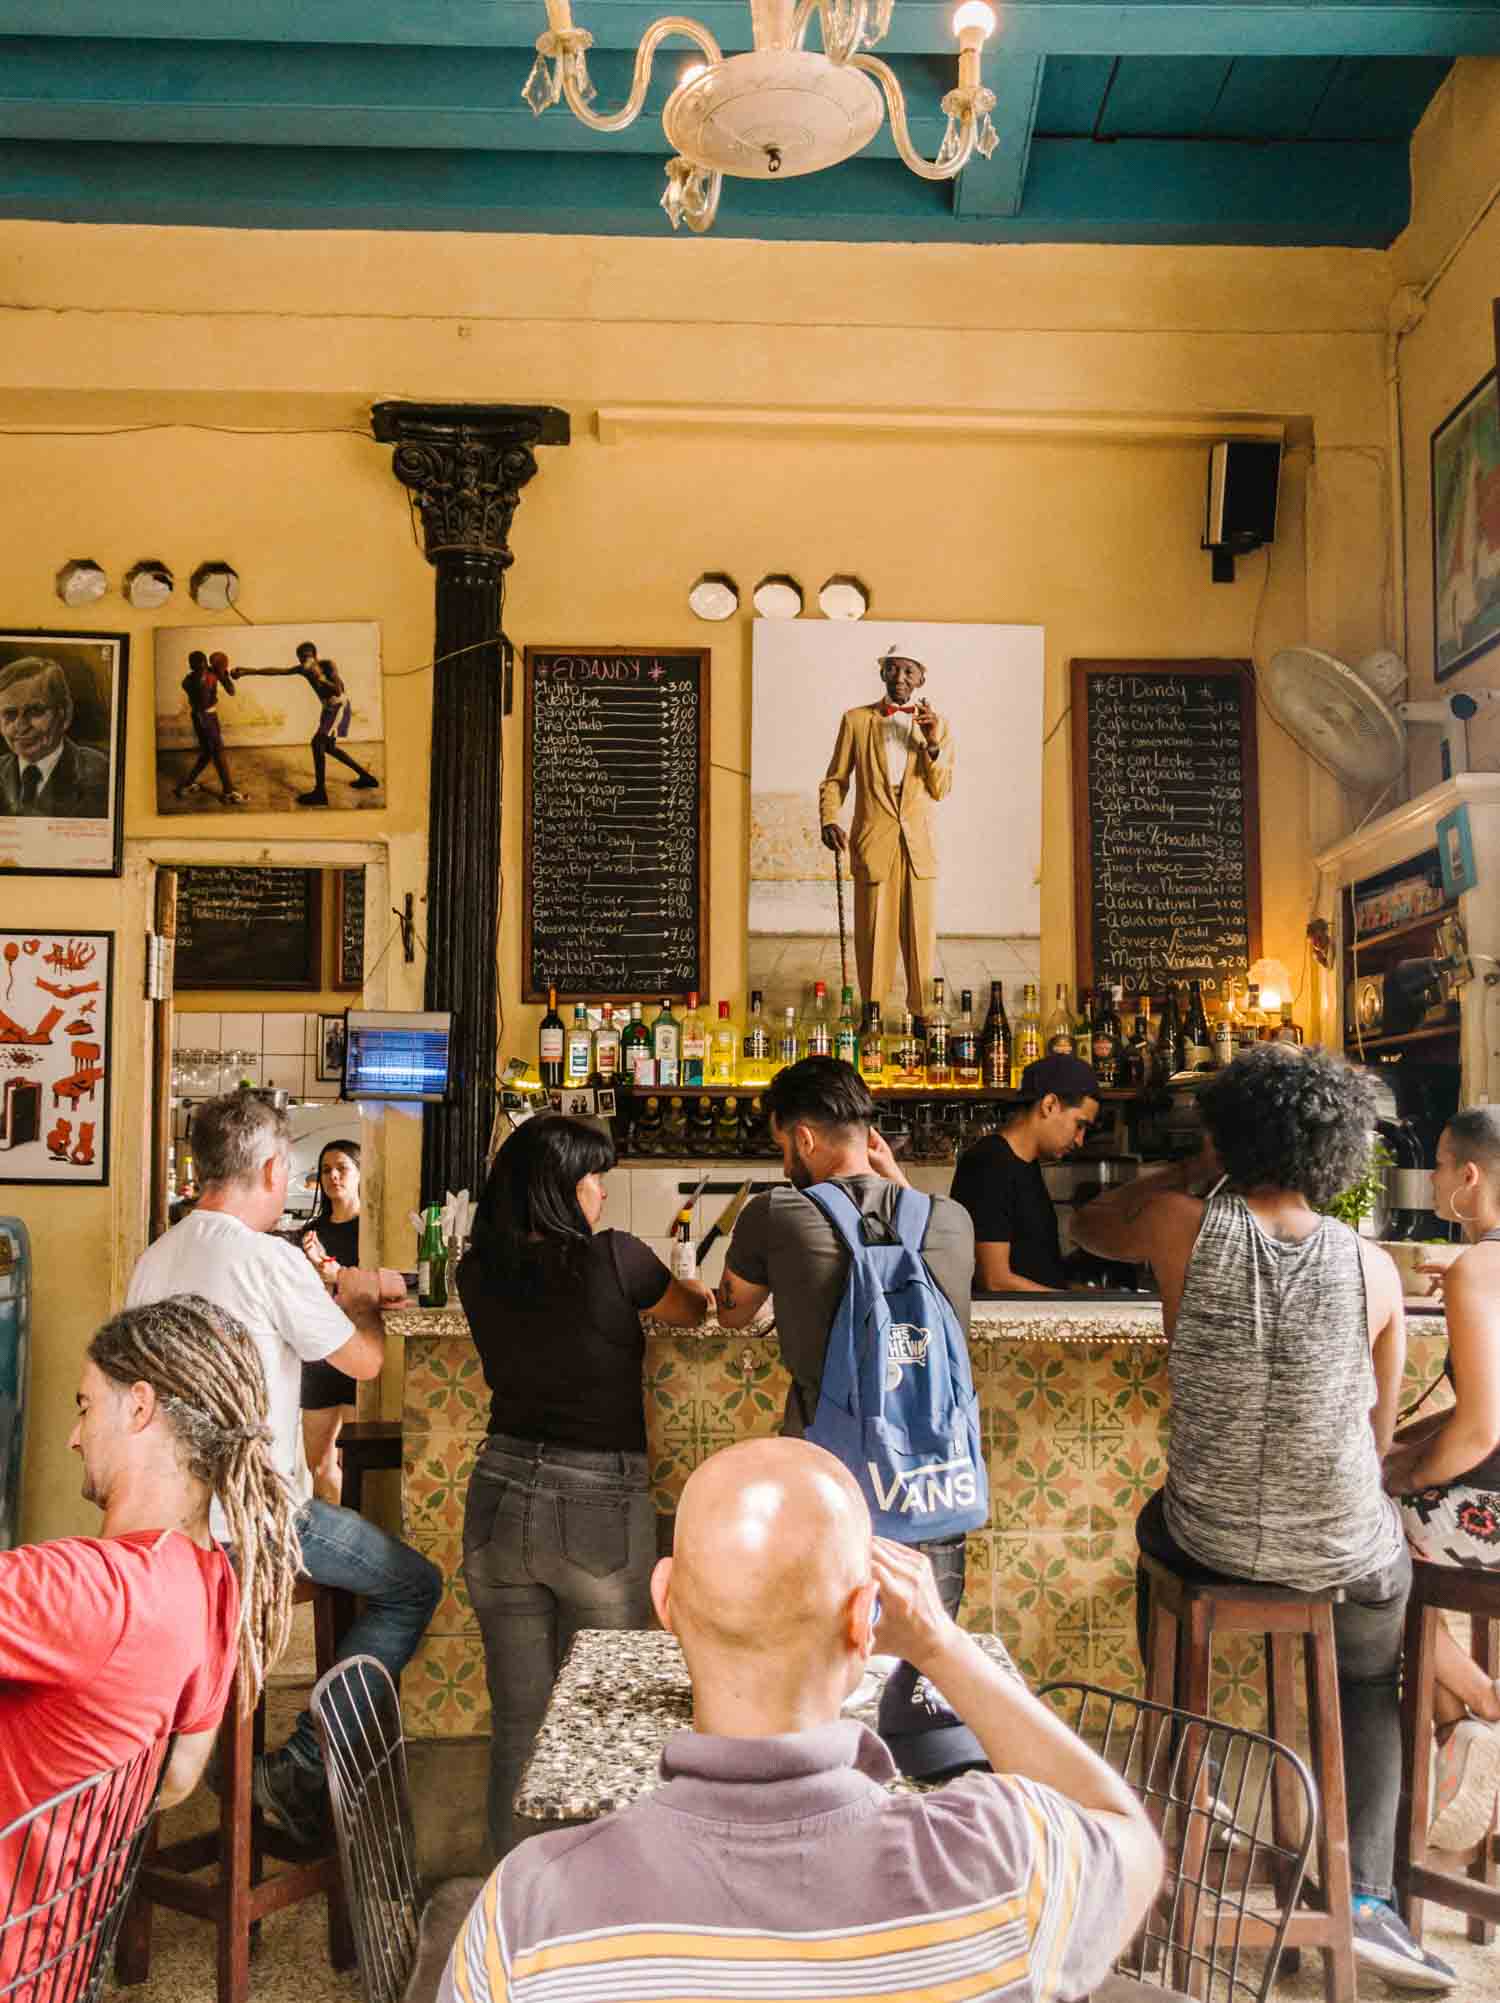 El Dandy restaurant in Havana